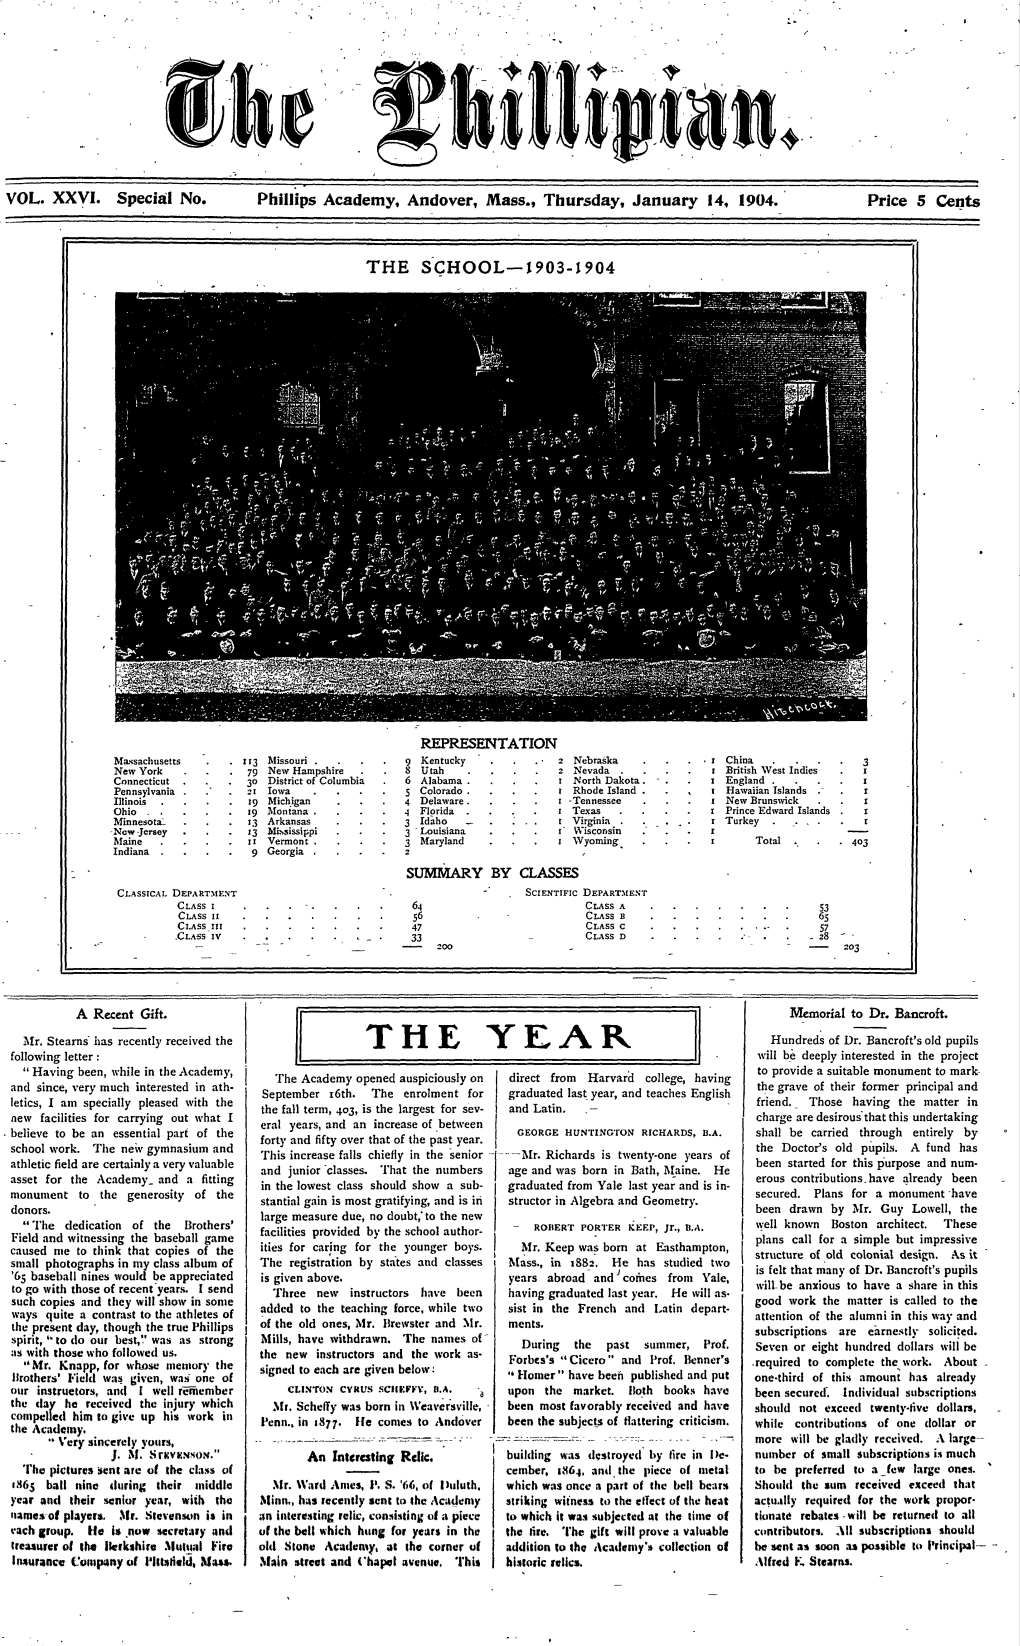 VOL. XXVI. Special No. Phillips Academy, Andover, Mass., Thursday, January 14, 1904